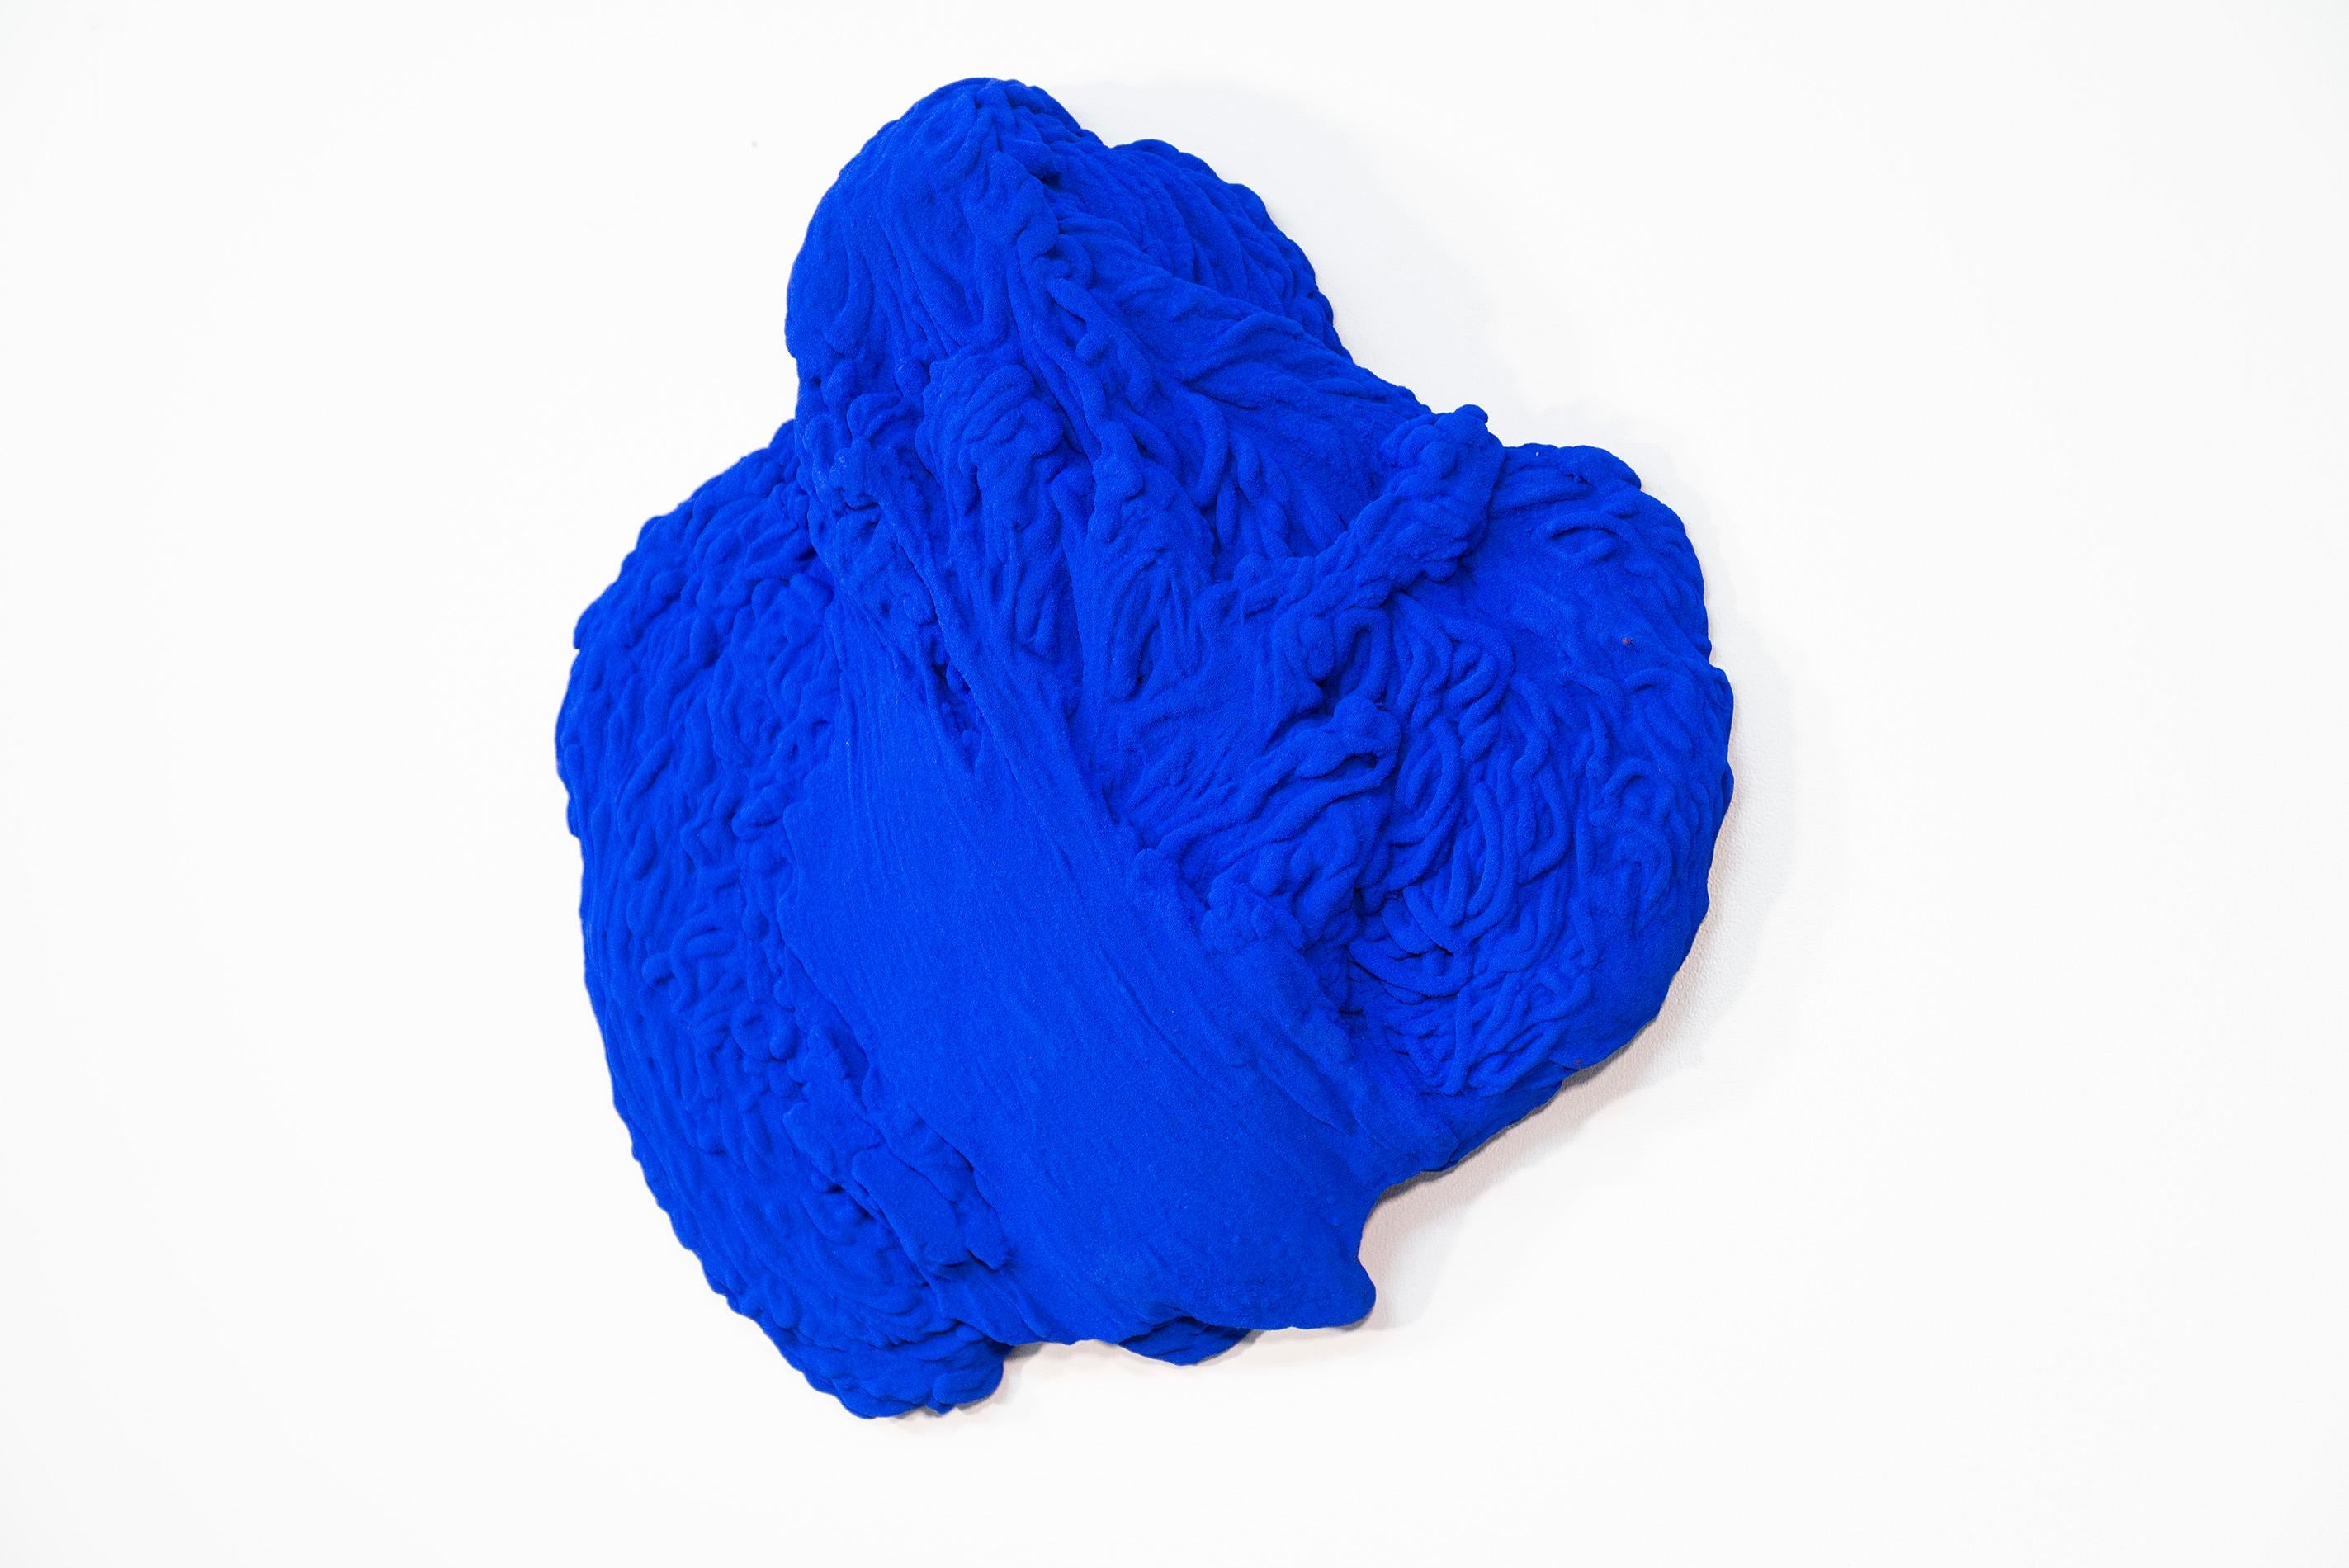 Blau Matter 2 - matt, blau, strukturiert, abstrakt, Mischtechnik-Wandskulptur – Sculpture von Shayne Dark